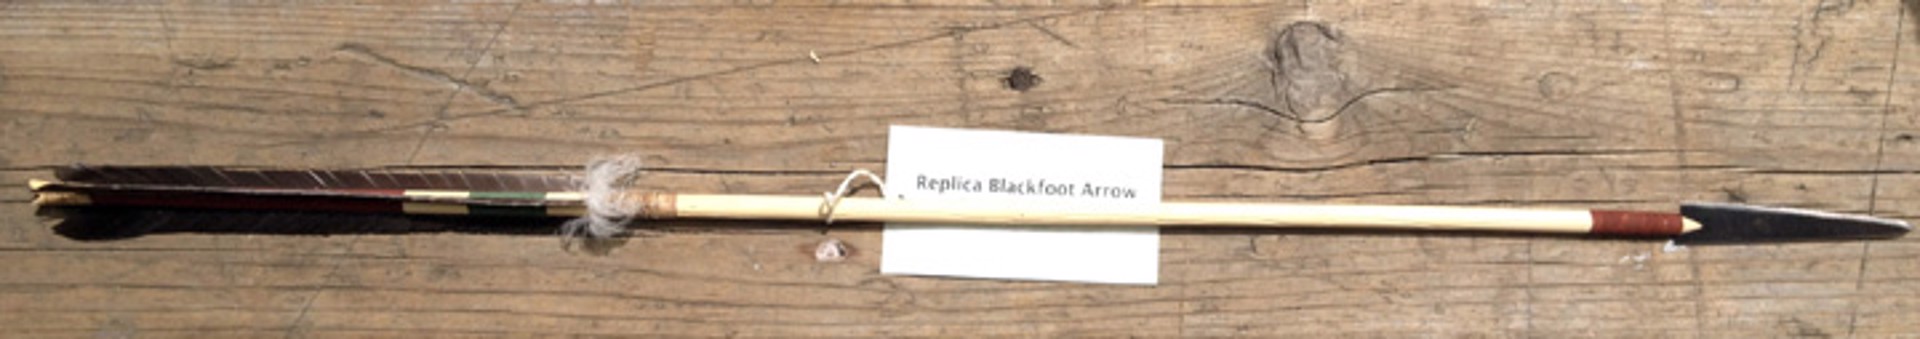 Replica Blackfoot Arrow by Steve Allely